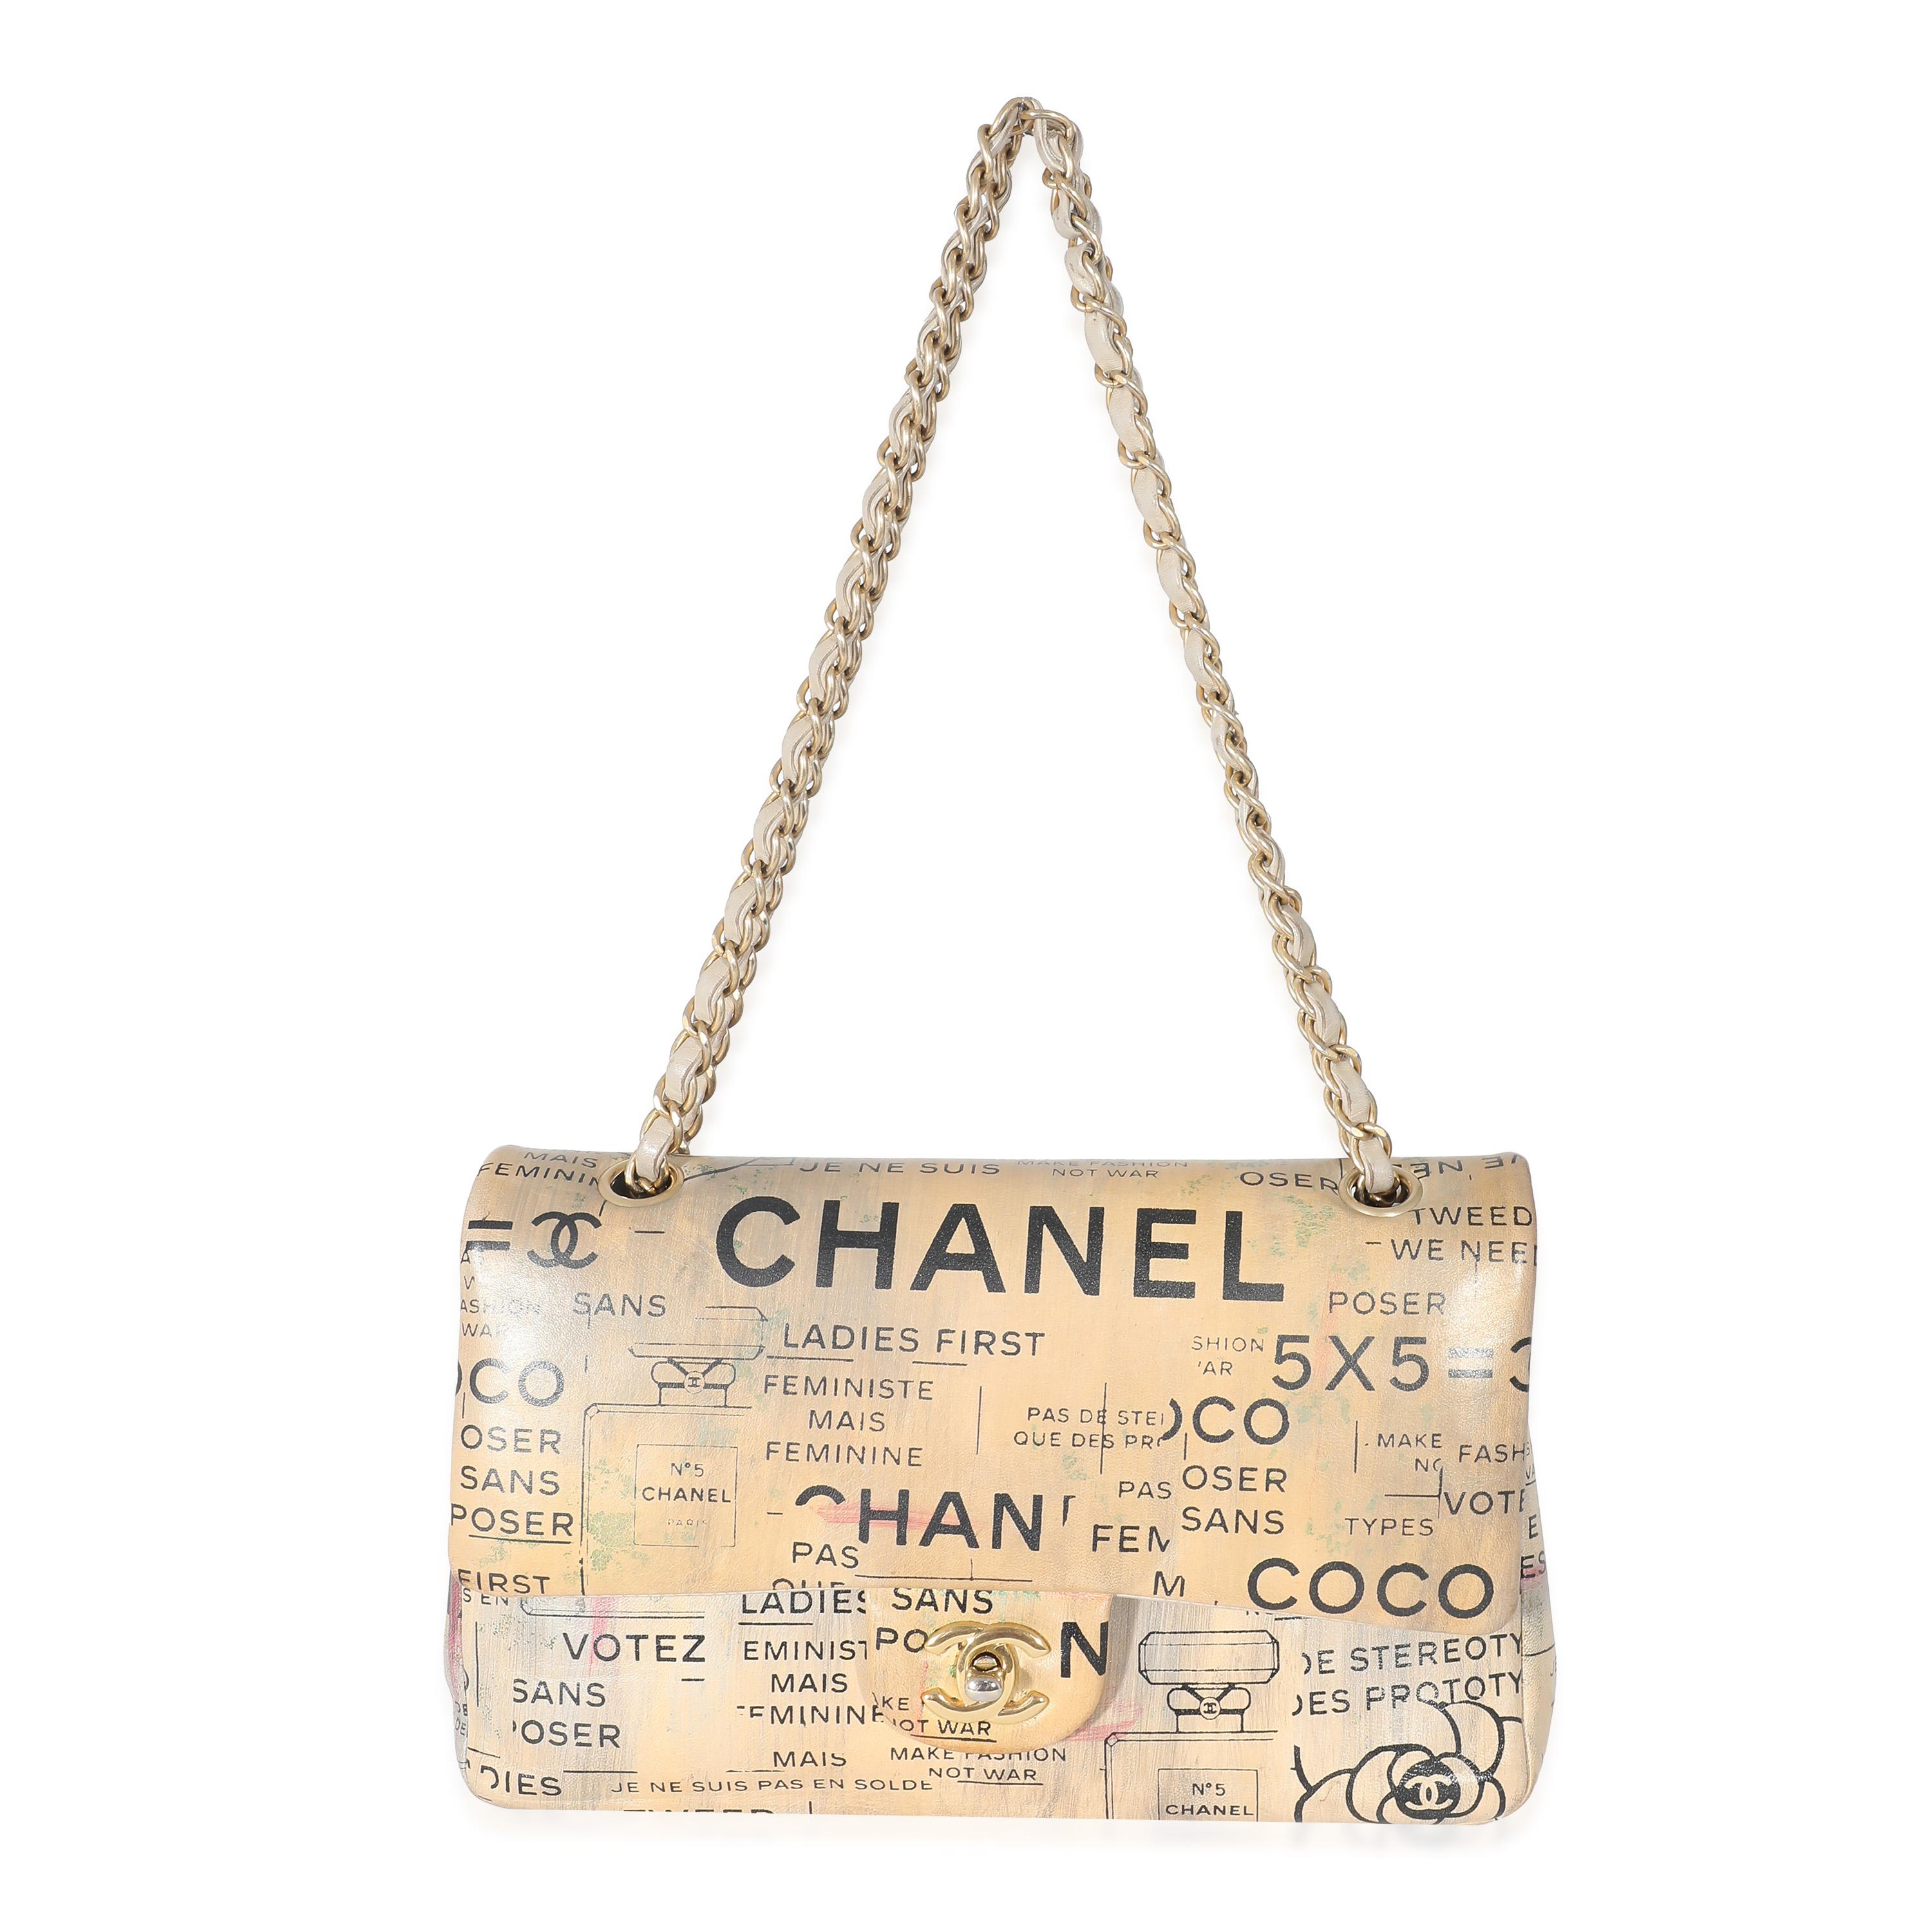 Auflistung Titel: Chanel Limited Edition Graffiti Newspaper Print Medium Double Flap Bag
SKU: 132953
Zustand: Gebraucht 
Handtasche Zustand: Gut
Bemerkungen zum Zustand: Der Artikel ist in gutem Zustand mit offensichtlichen Gebrauchsspuren.